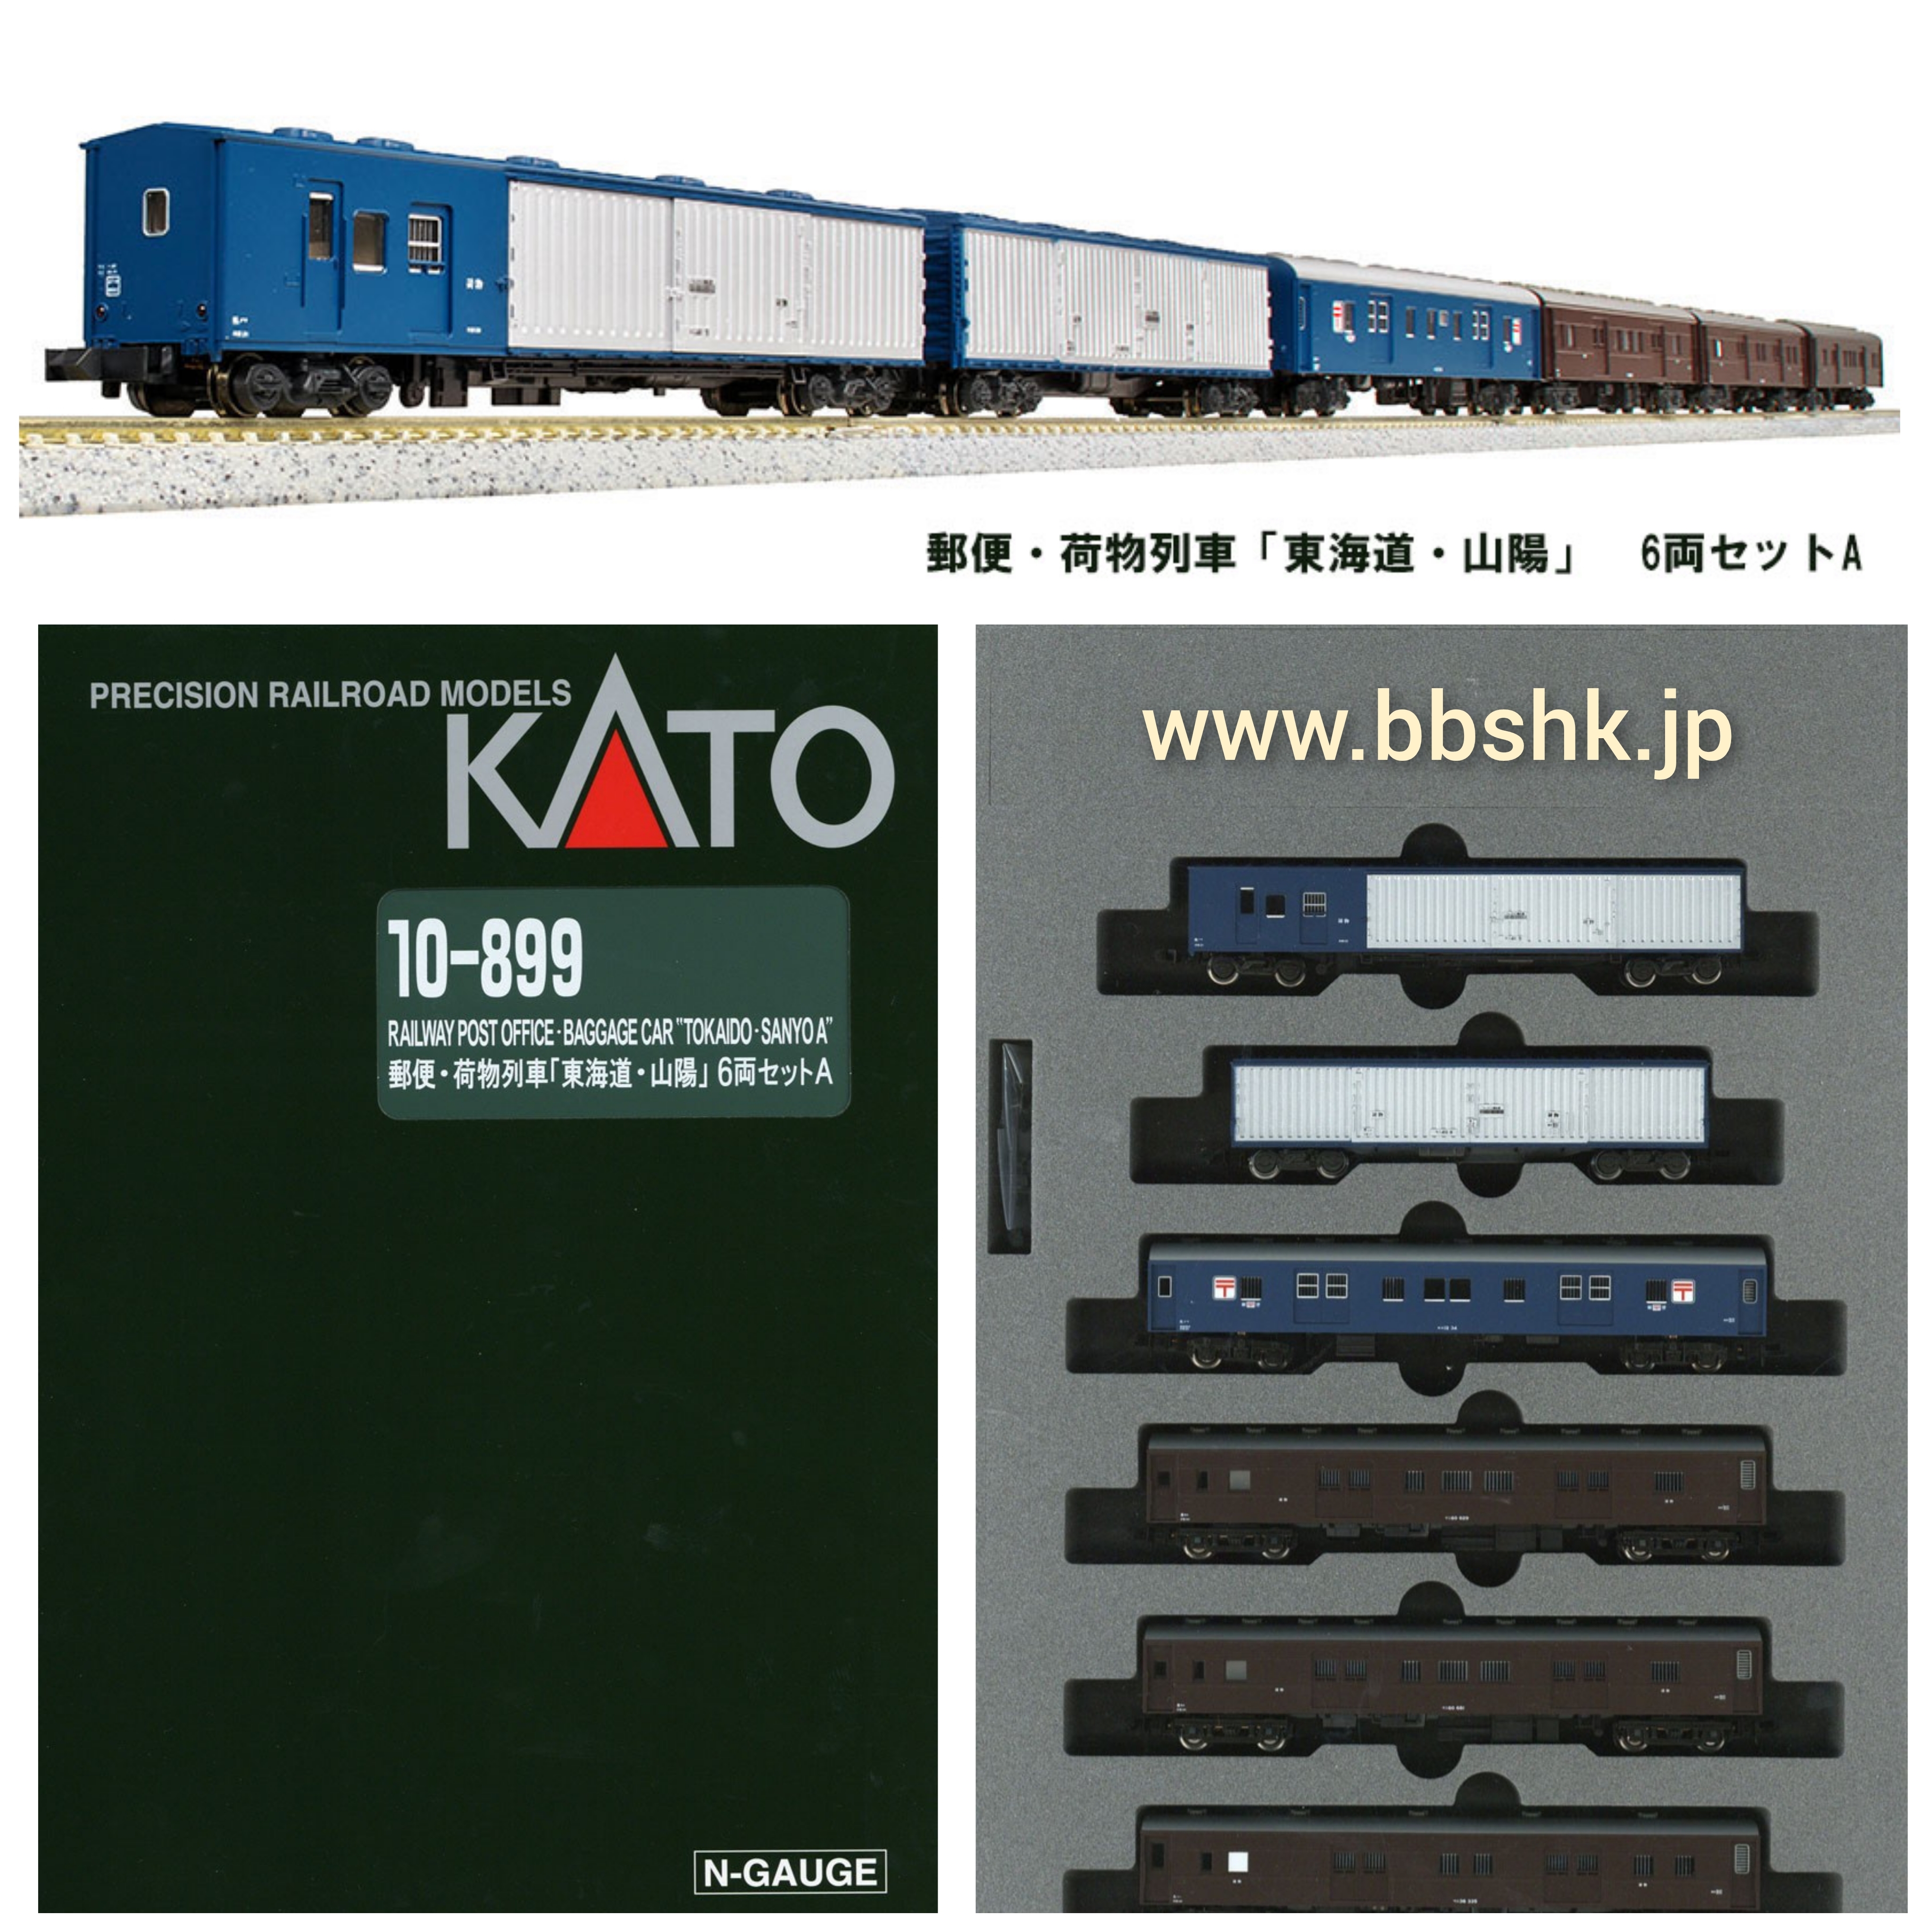 KATO 10-899 郵便・荷物列車「東海道・山陽」 6両